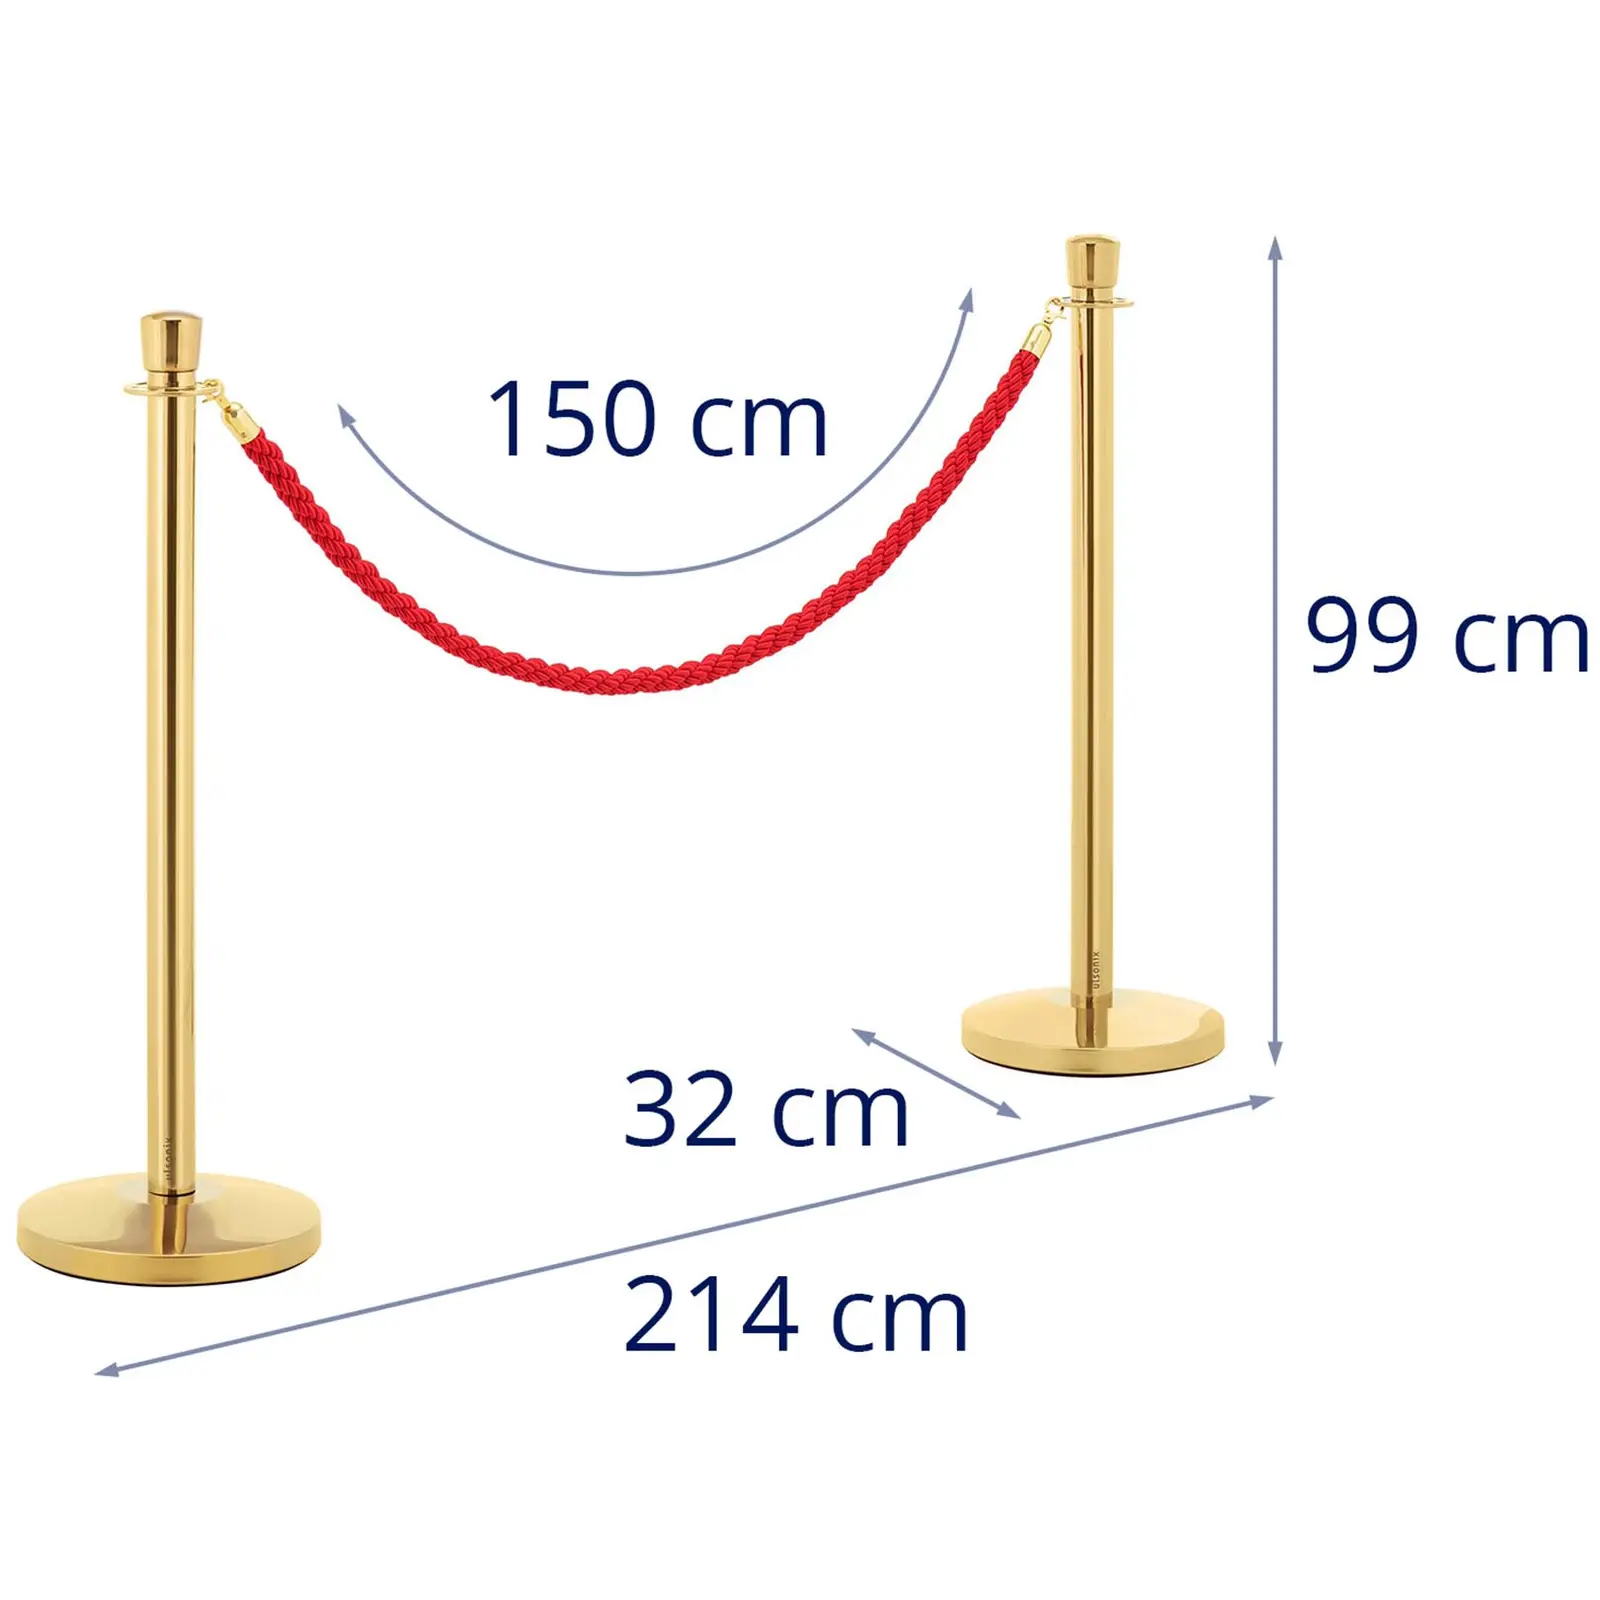 2 postes para barrera con cordón - 200 cm - dorados